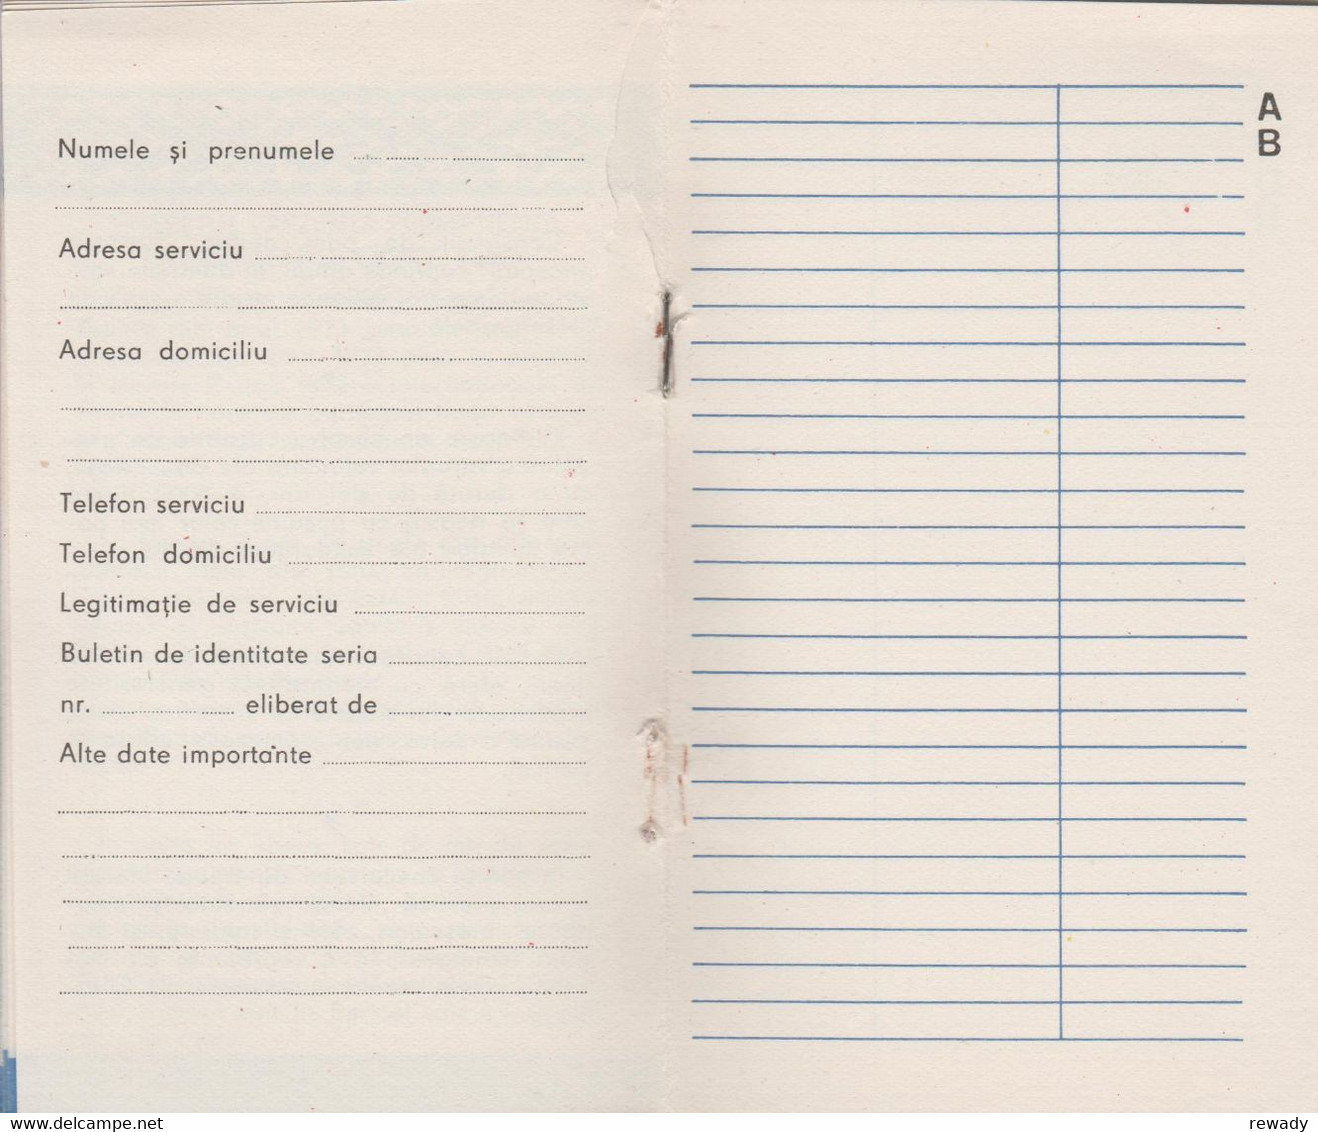 Historical Documents - Romania - Bucuresti - Societatea de Cruce Rosie din  RSR - Agenda telefonica - Calendar 1985-1987